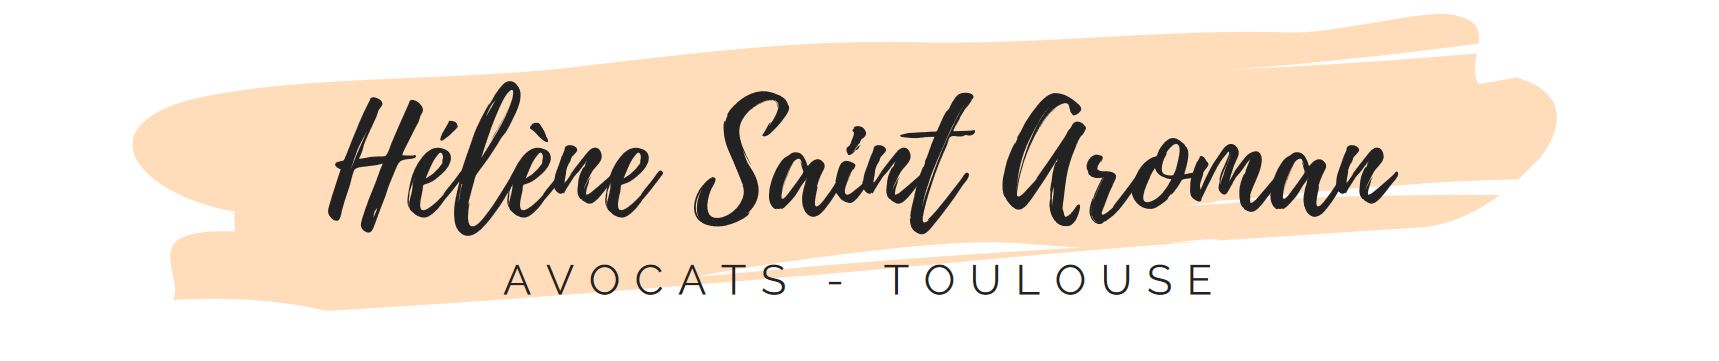 Cabinet Saint Aroman Avocats Toulouse